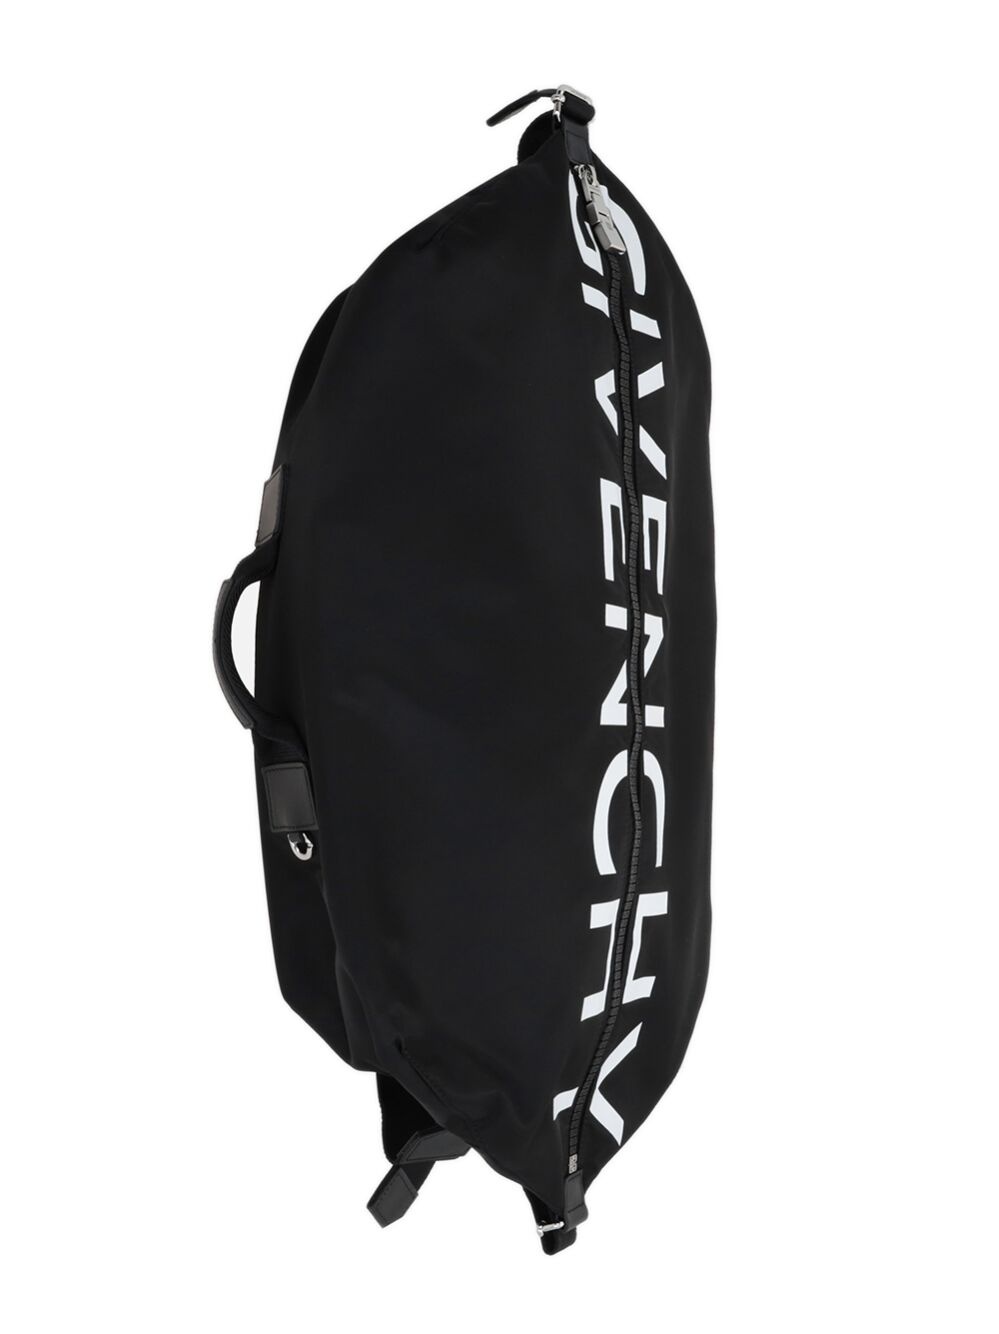 G-zip backpack - 3